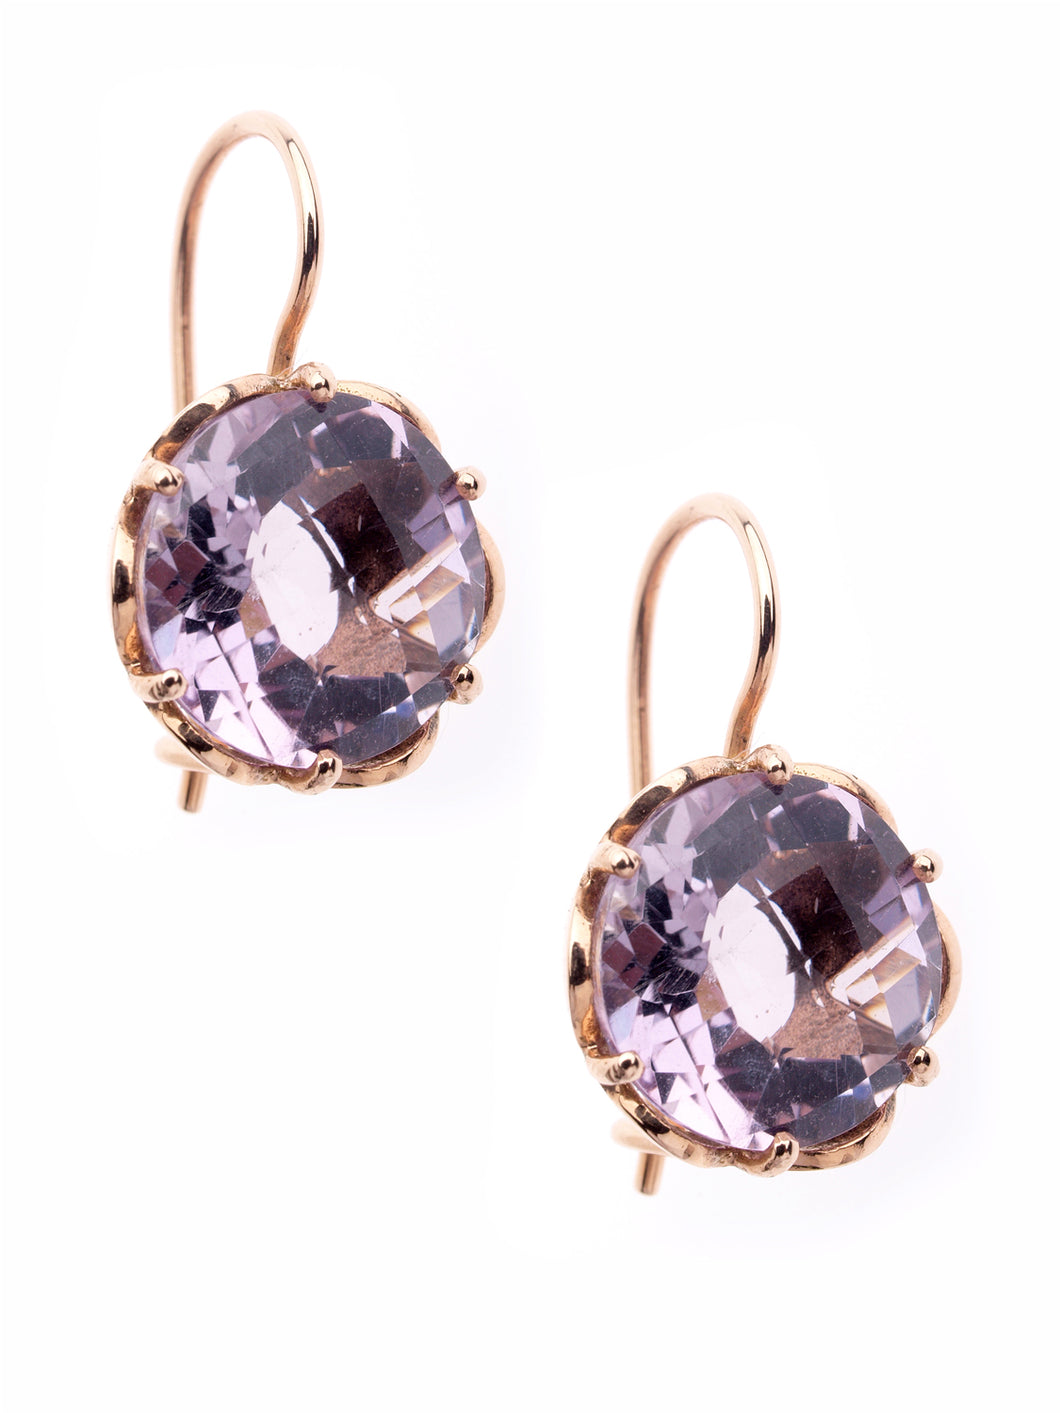 GOLD EARRINGS Rose Amethyst Gemstone Drop Earrings in 14kt Rose Gold GDE501-A-Gld